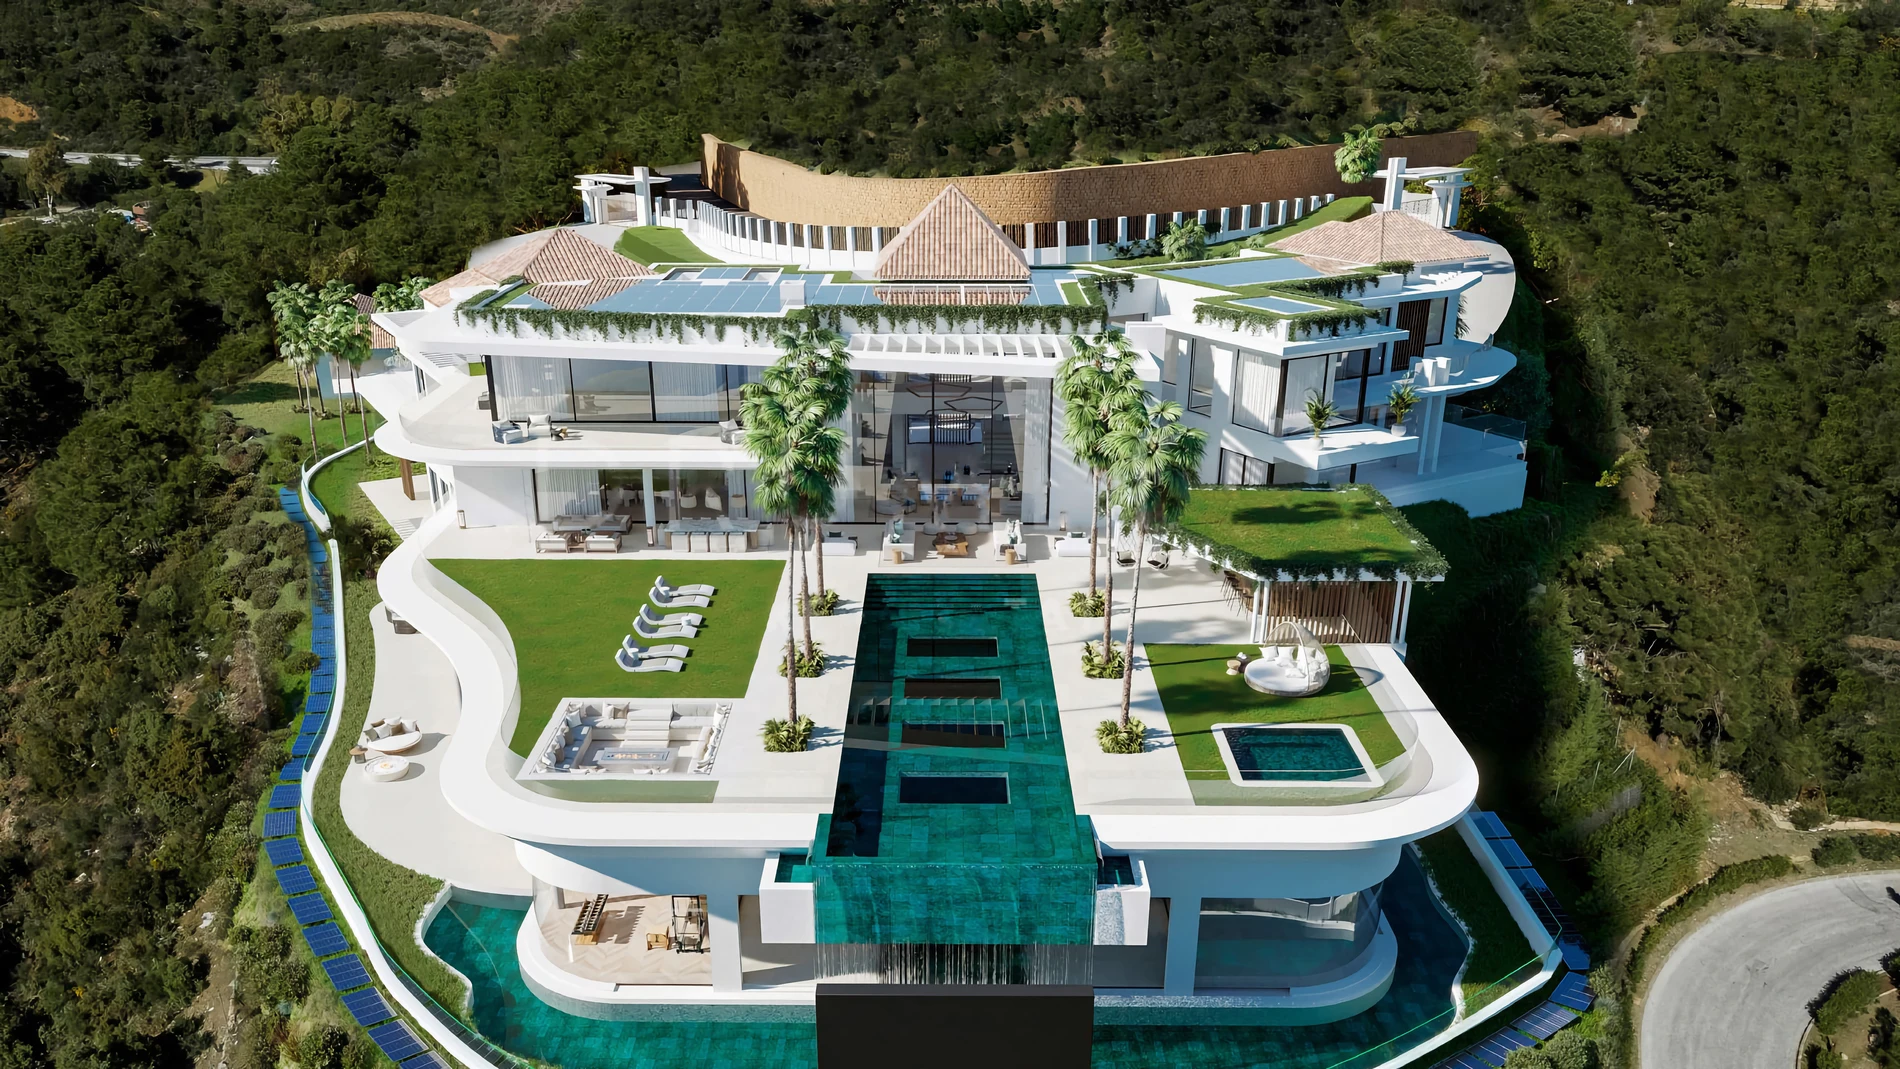 MARBELLA, 08/07/2023.- Vista de Villa Enso, la casa a la venta más cara de España que se encuentra en una urbanización de Marbella, en la conocida como La Milla de Oro de la ciudad malagueña, y cuesta la friolera de 55 millones de euros, según lo publicado en el portal inmobiliario Idealista. EFE/ Lv Real Estate & Architecture SOLO USO EDITORIAL/SOLO DISPONIBLE PARA ILUSTRAR LA NOTICIA QUE ACOMPAÑA (CRÉDITO OBLIGATORIO)